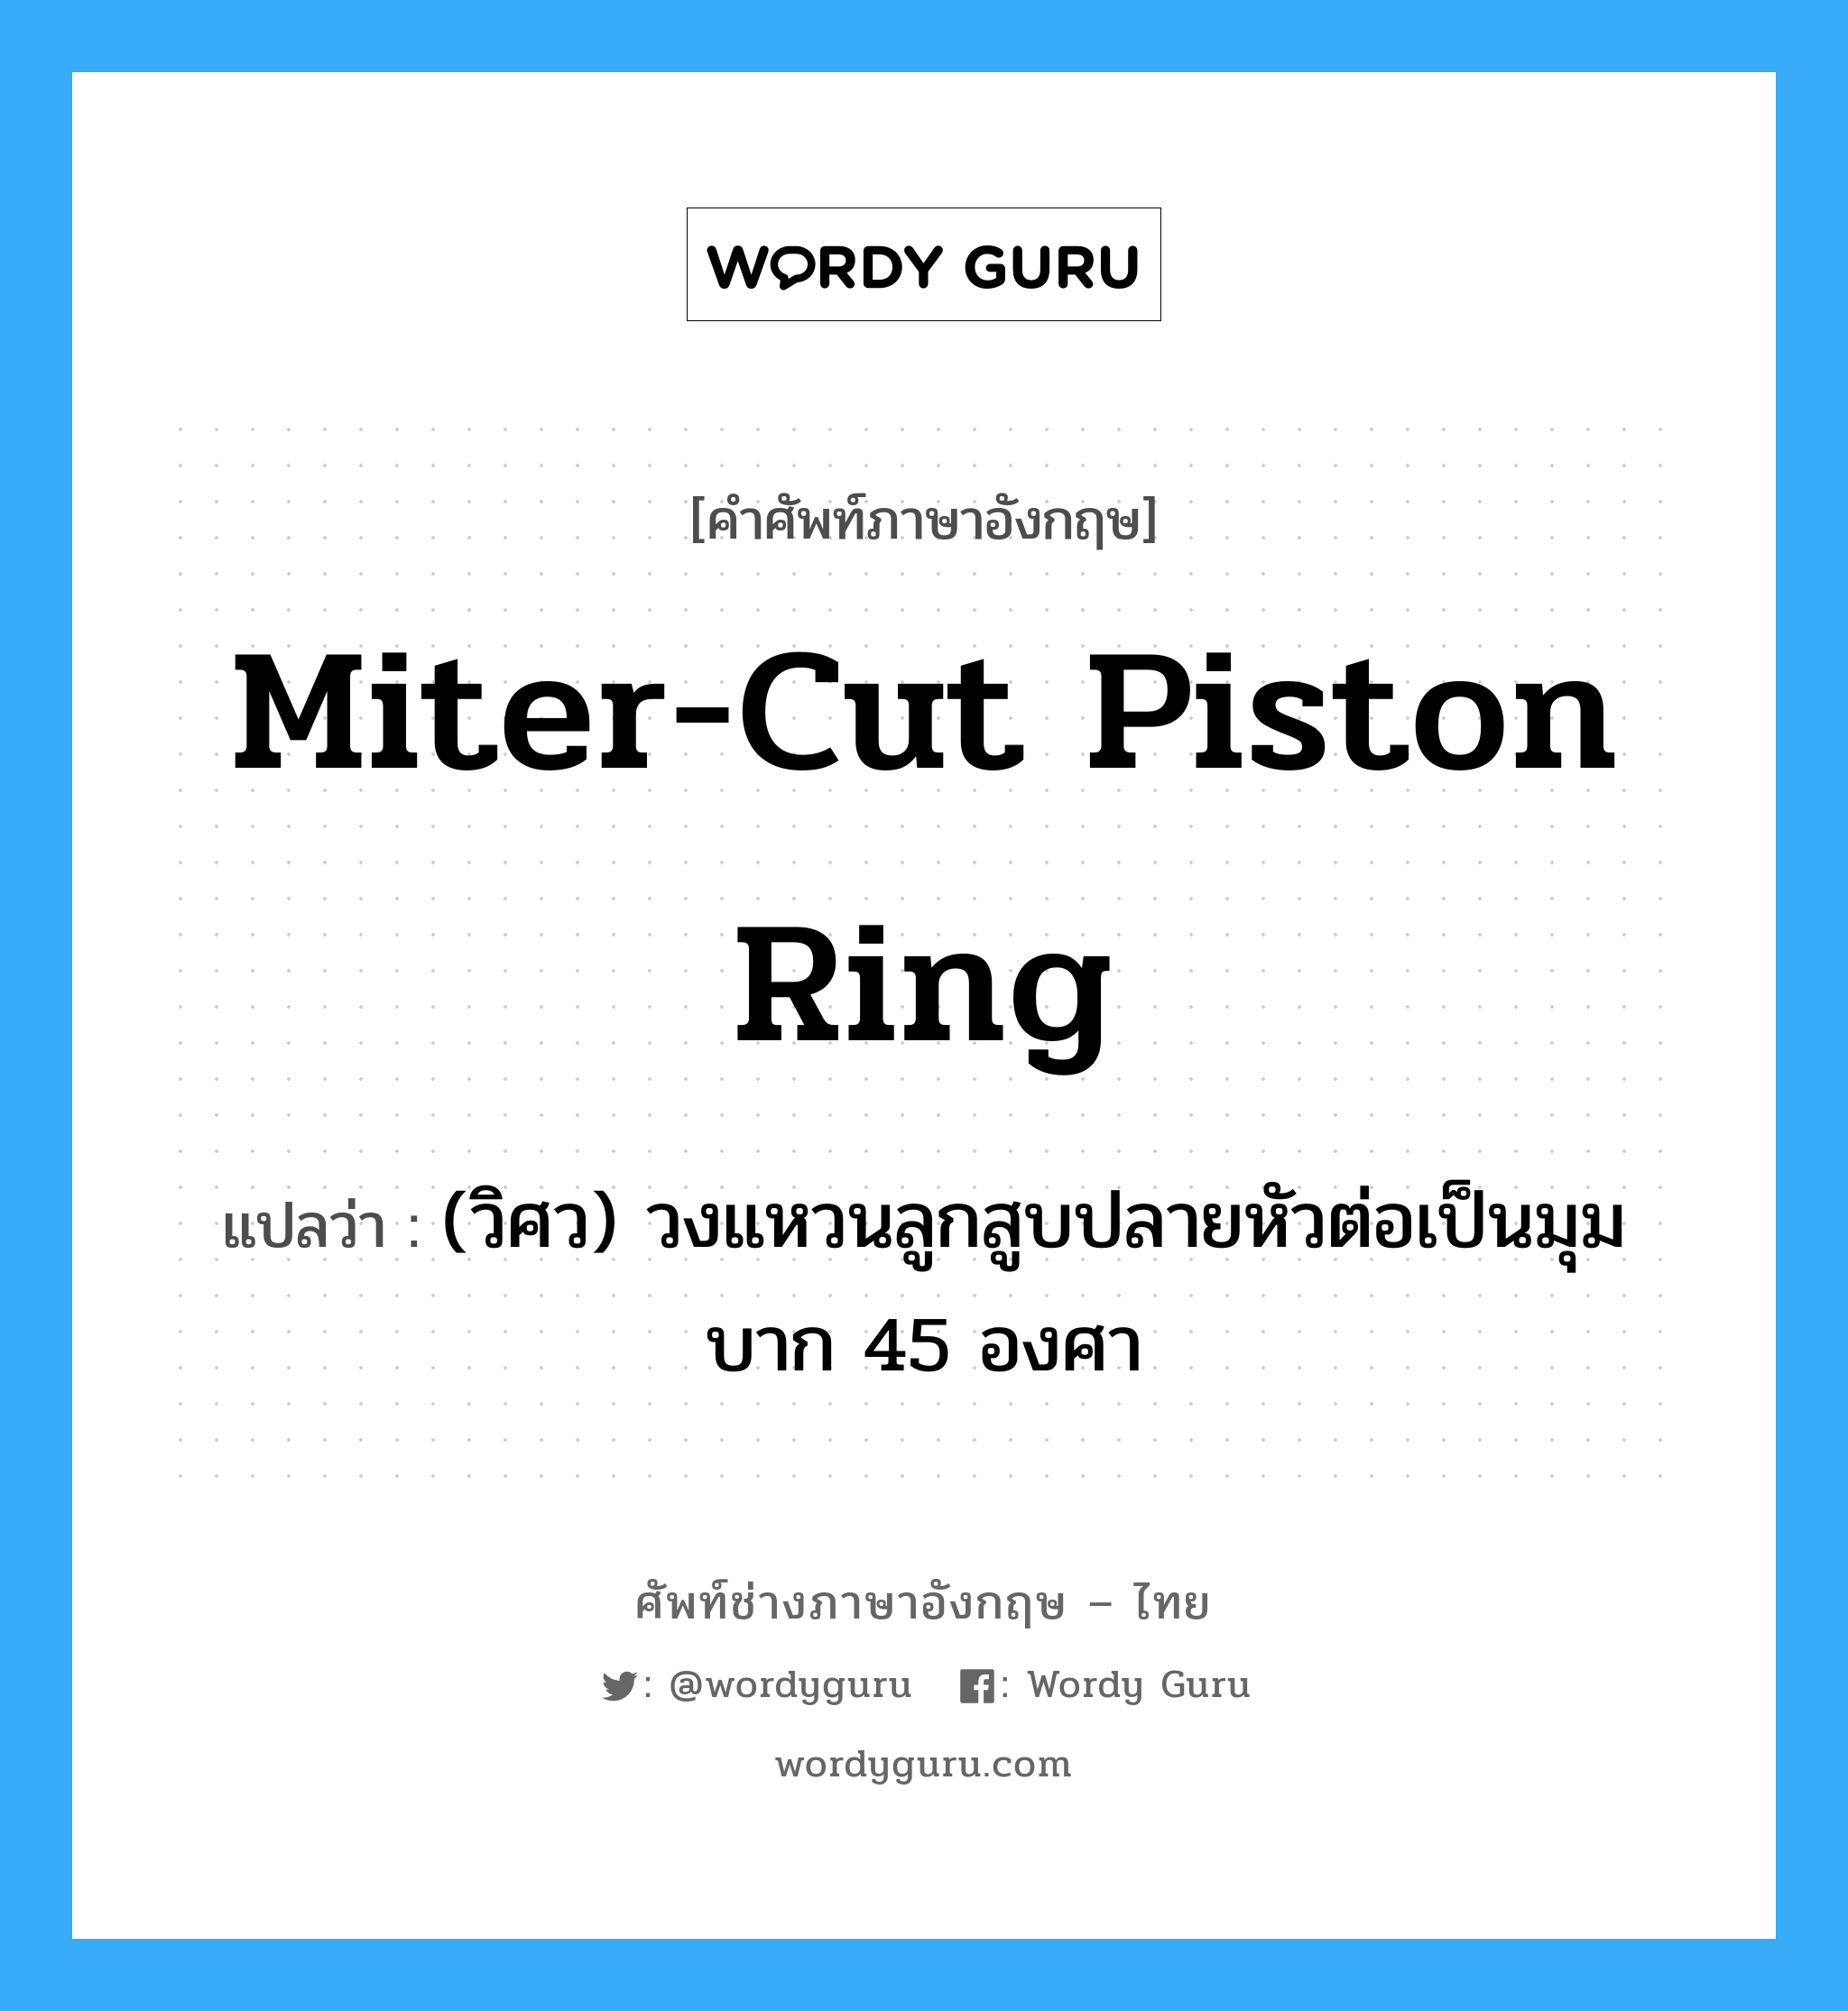 miter-cut piston ring แปลว่า?, คำศัพท์ช่างภาษาอังกฤษ - ไทย miter-cut piston ring คำศัพท์ภาษาอังกฤษ miter-cut piston ring แปลว่า (วิศว) วงแหวนลูกสูบปลายหัวต่อเป็นมุมบาก 45 องศา